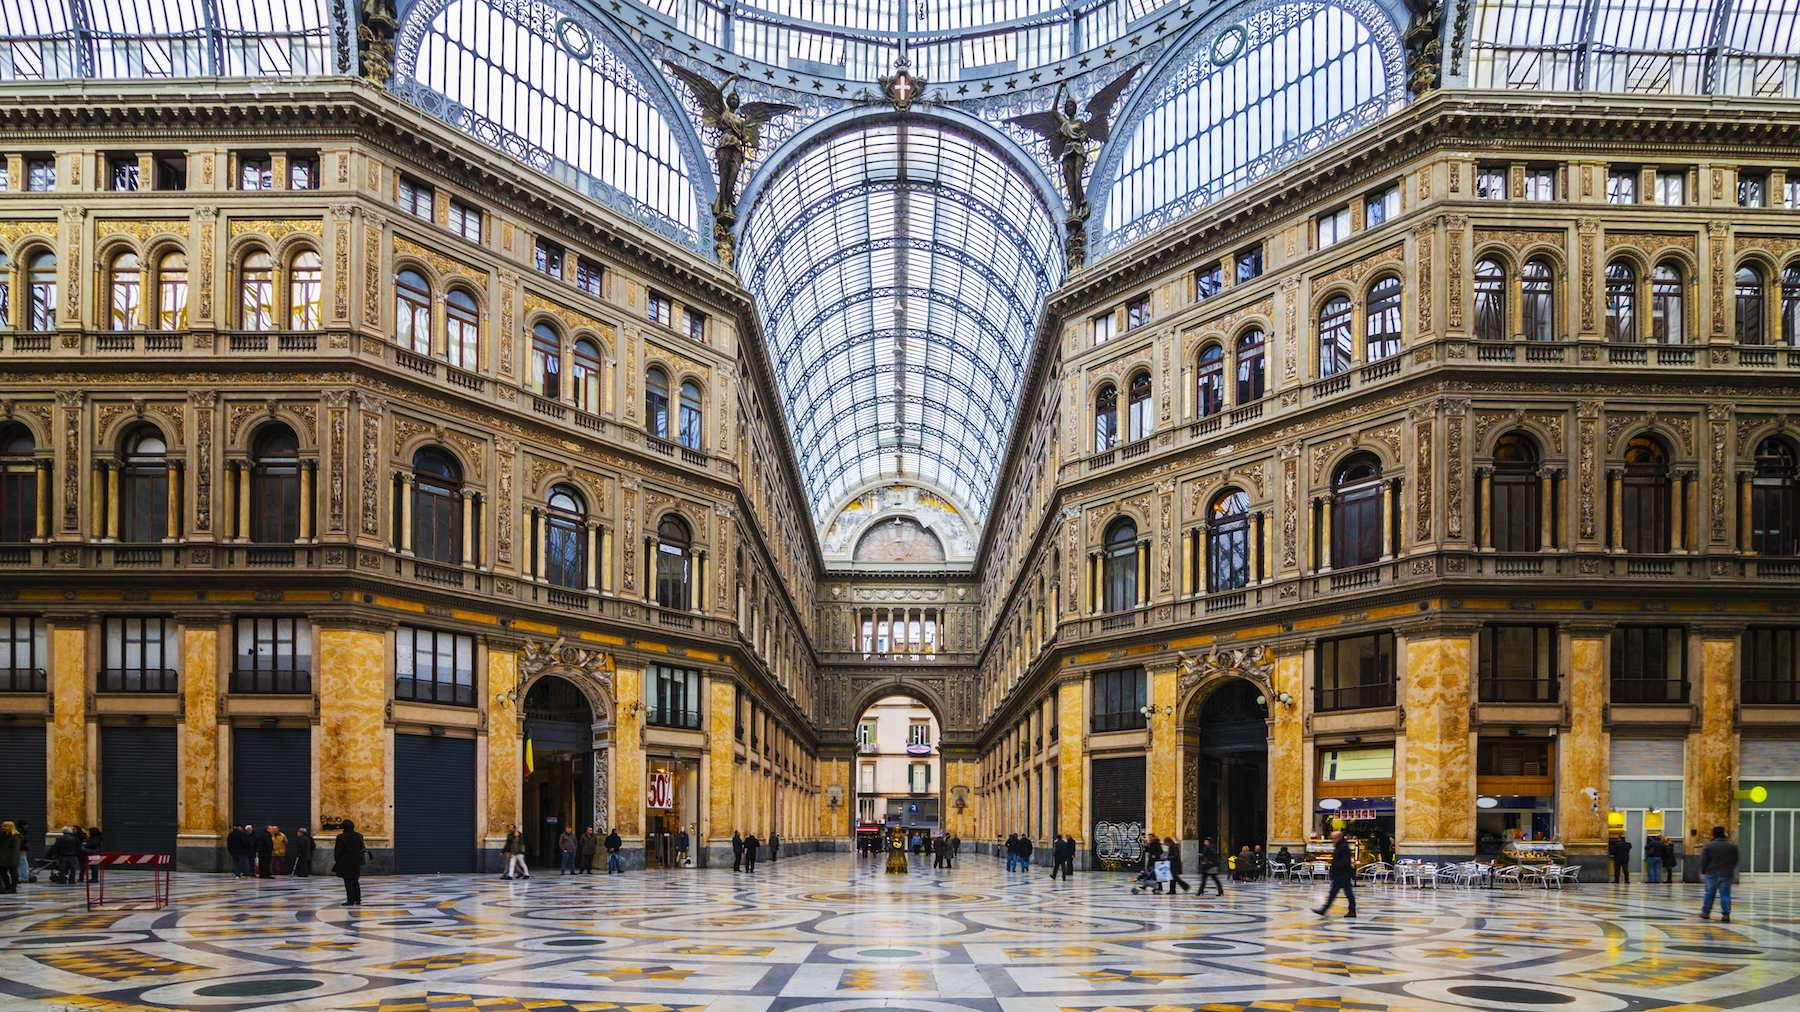 Naples Galleria Umberto